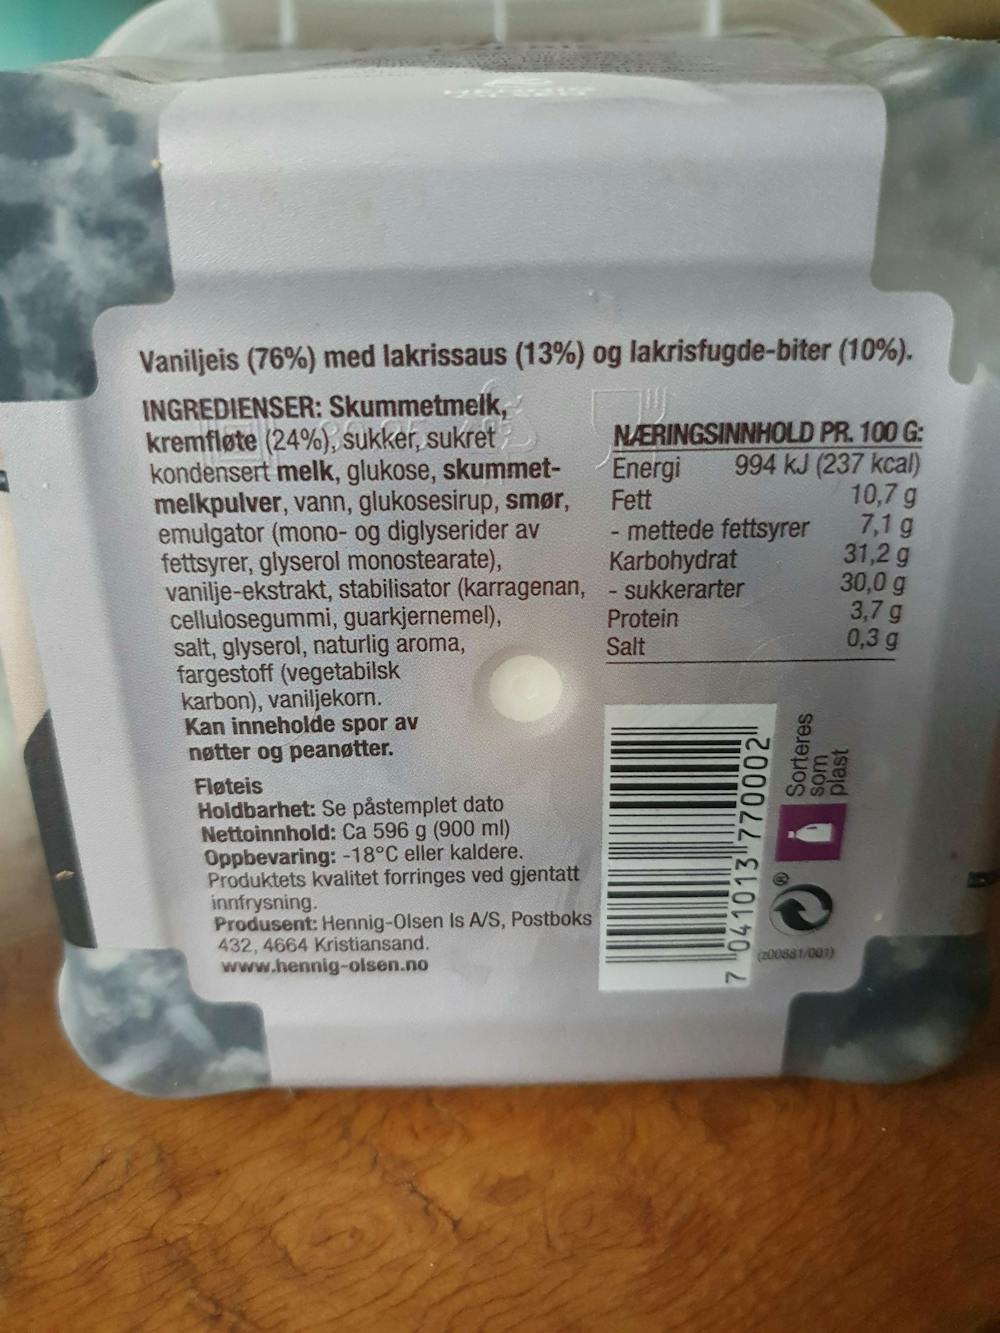 Ingredienslisten til Inspira, lakris med lakrissaus og biter av myk lakrisfudge, Hennig Olsen